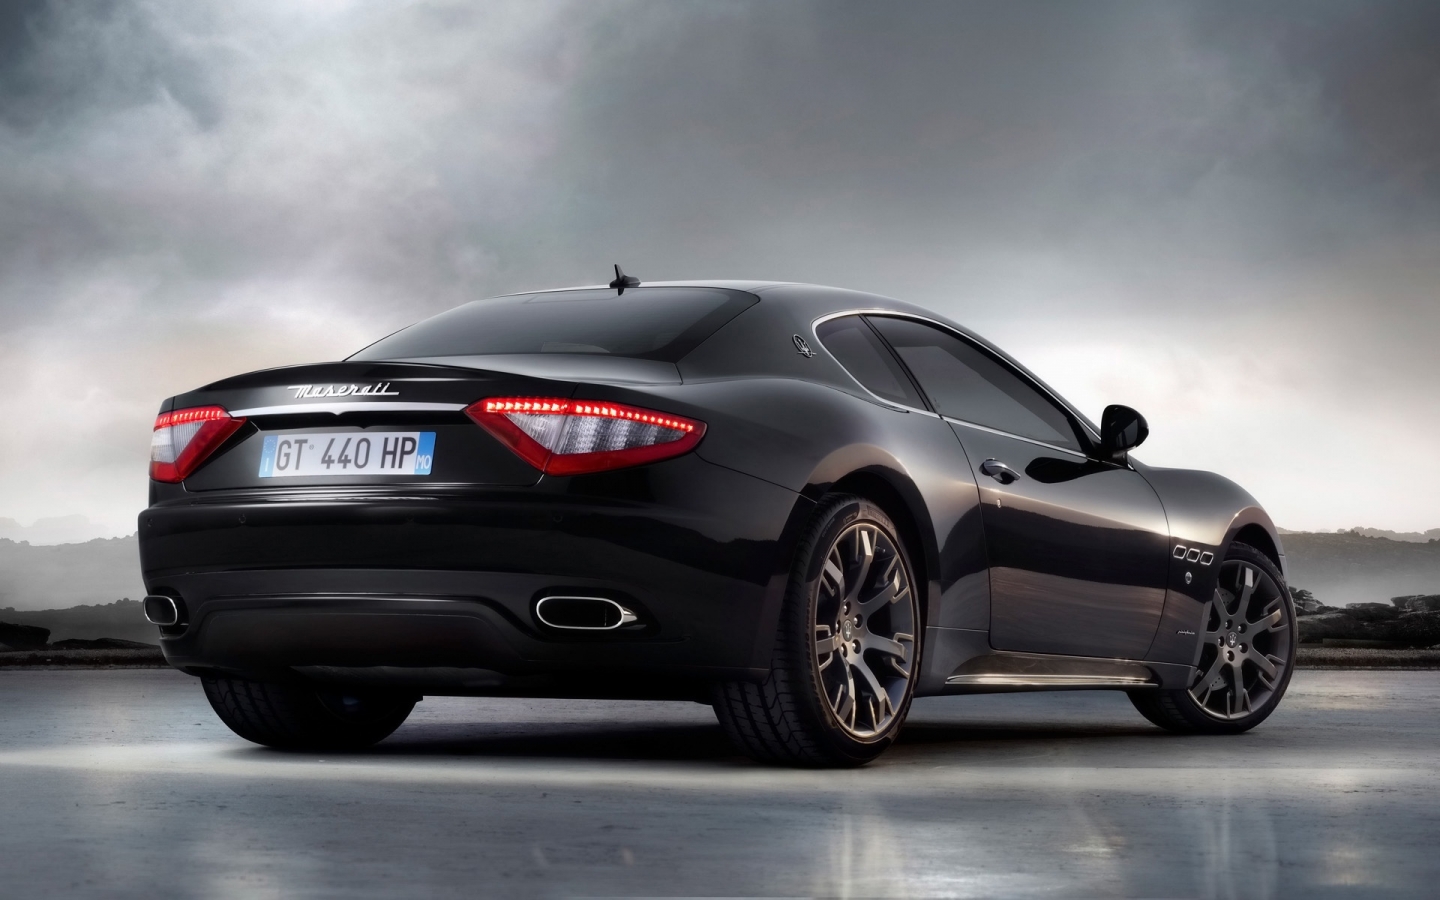 Maserati Gran Turismo 2010 S Black Rear Angle for 1440 x 900 widescreen resolution